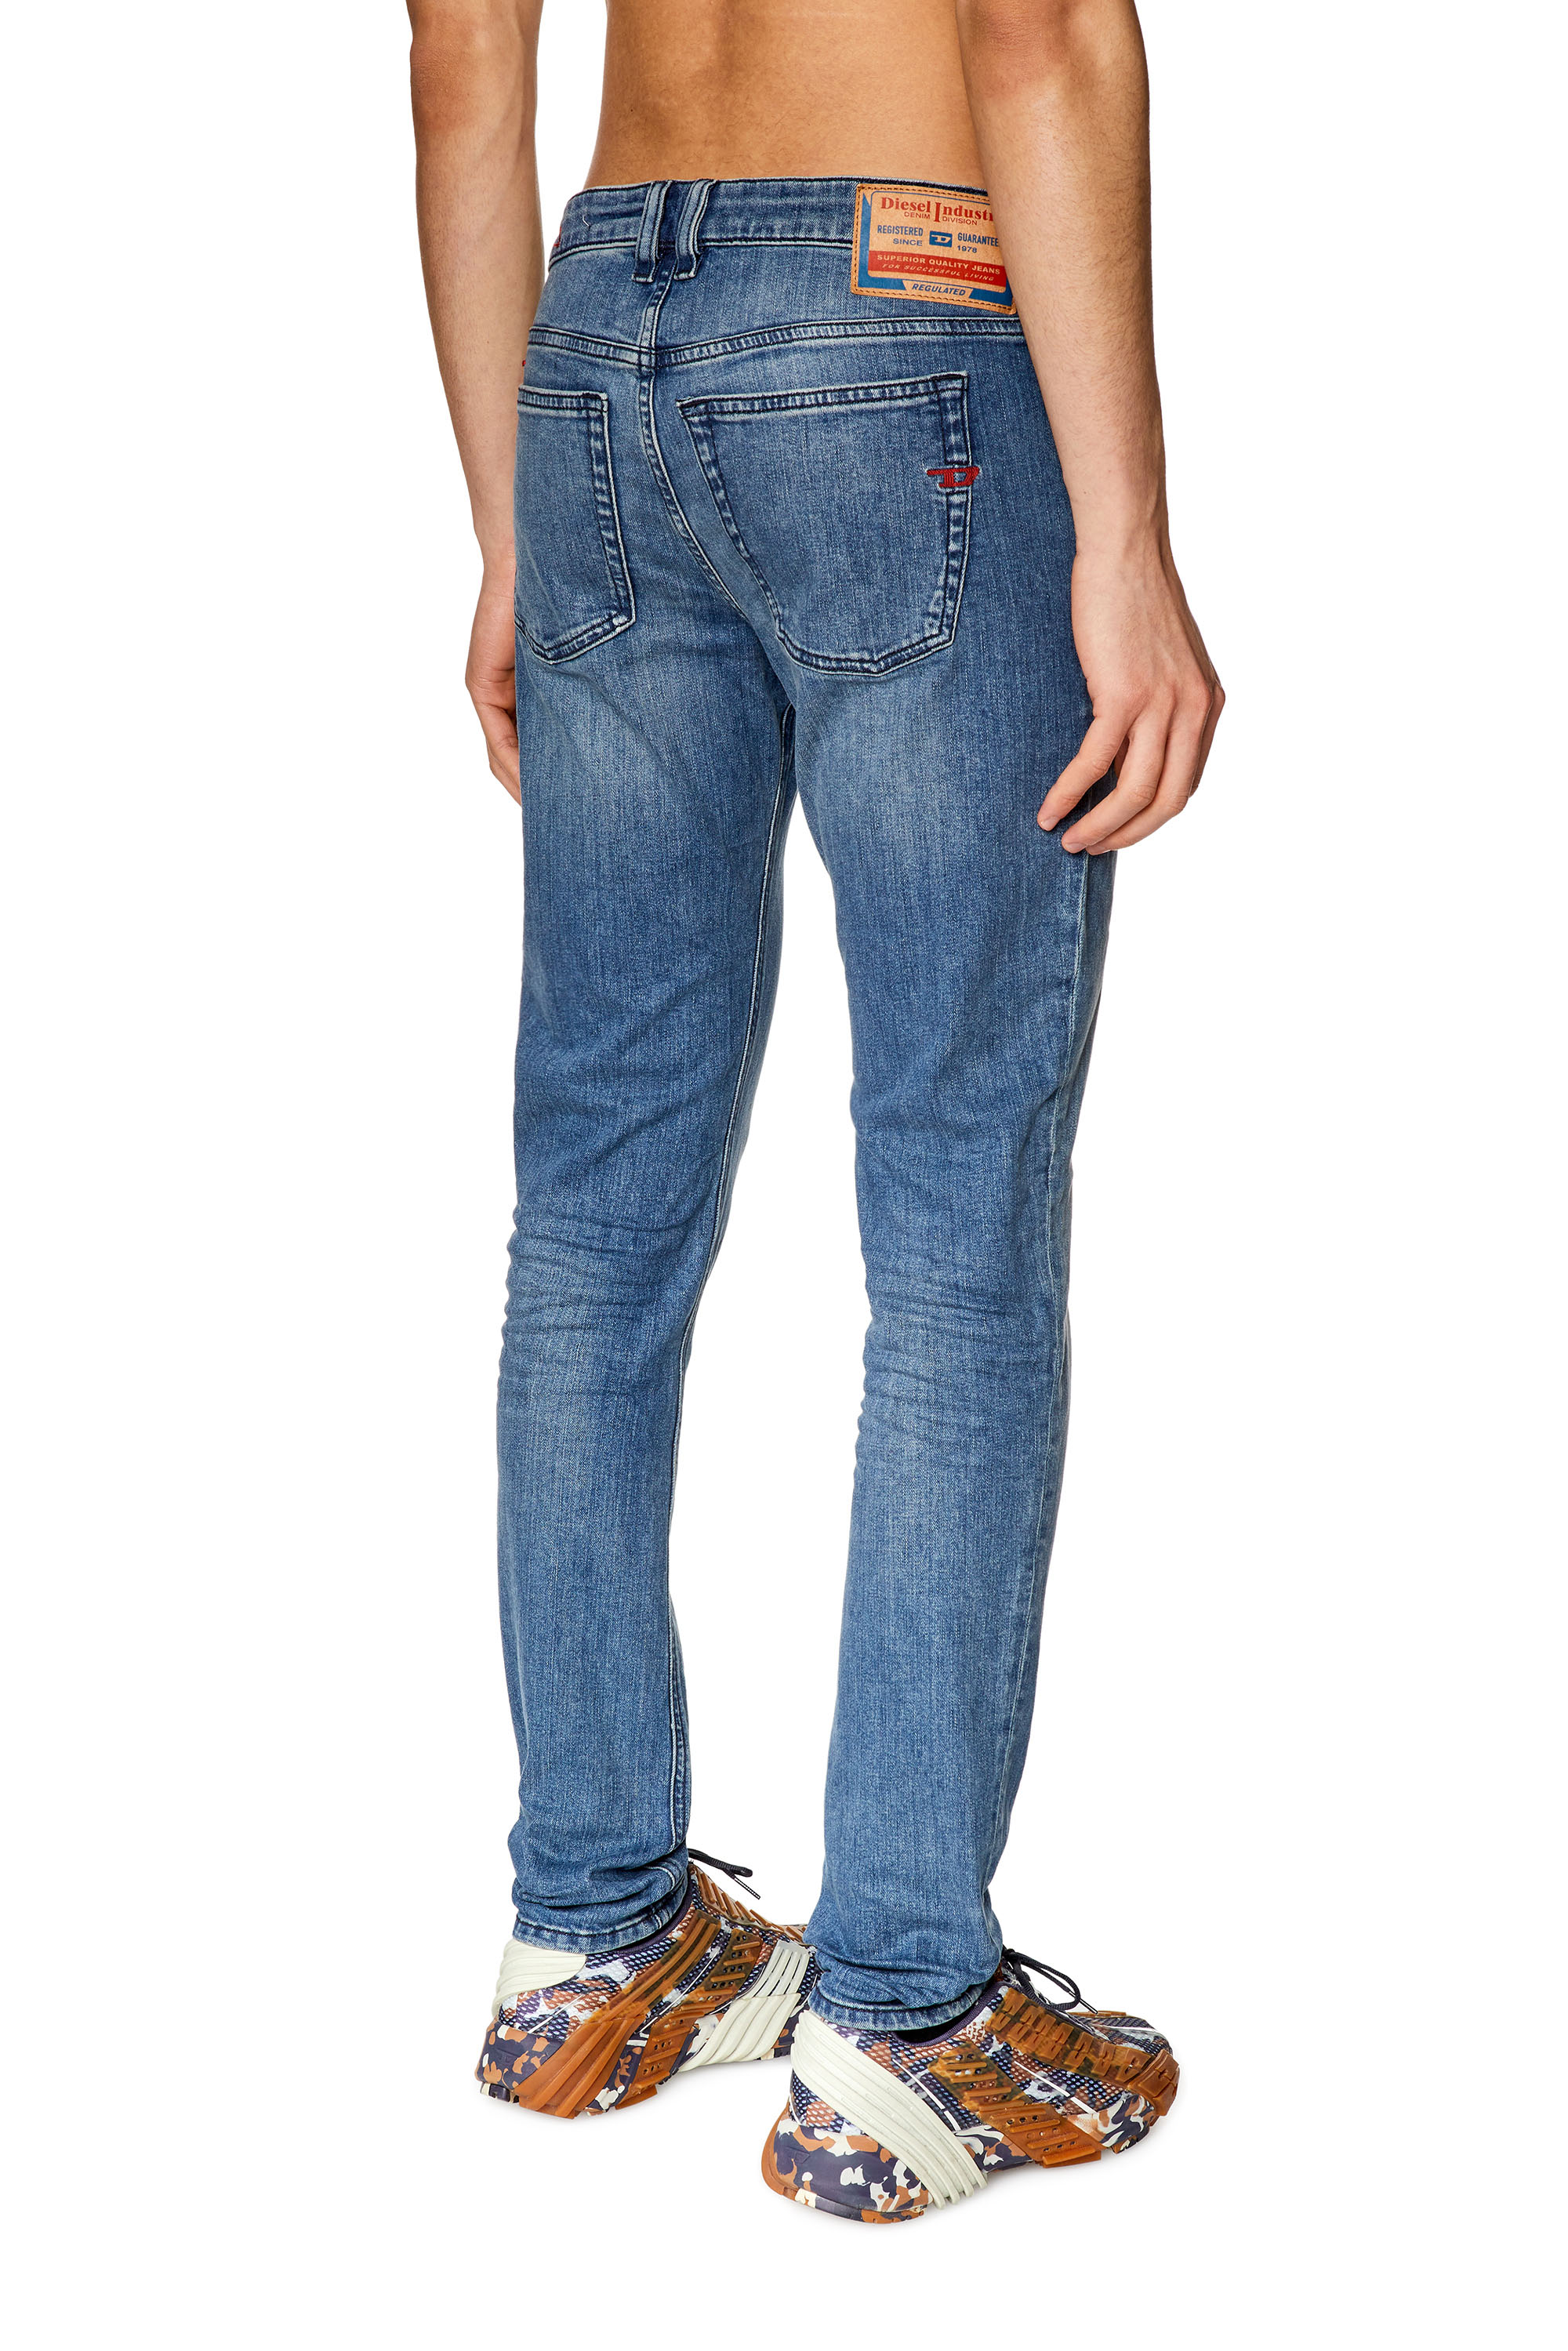 Diesel Men's Jeans: Straight, Tapered, Slim, Bootcut, Skinny, Wide